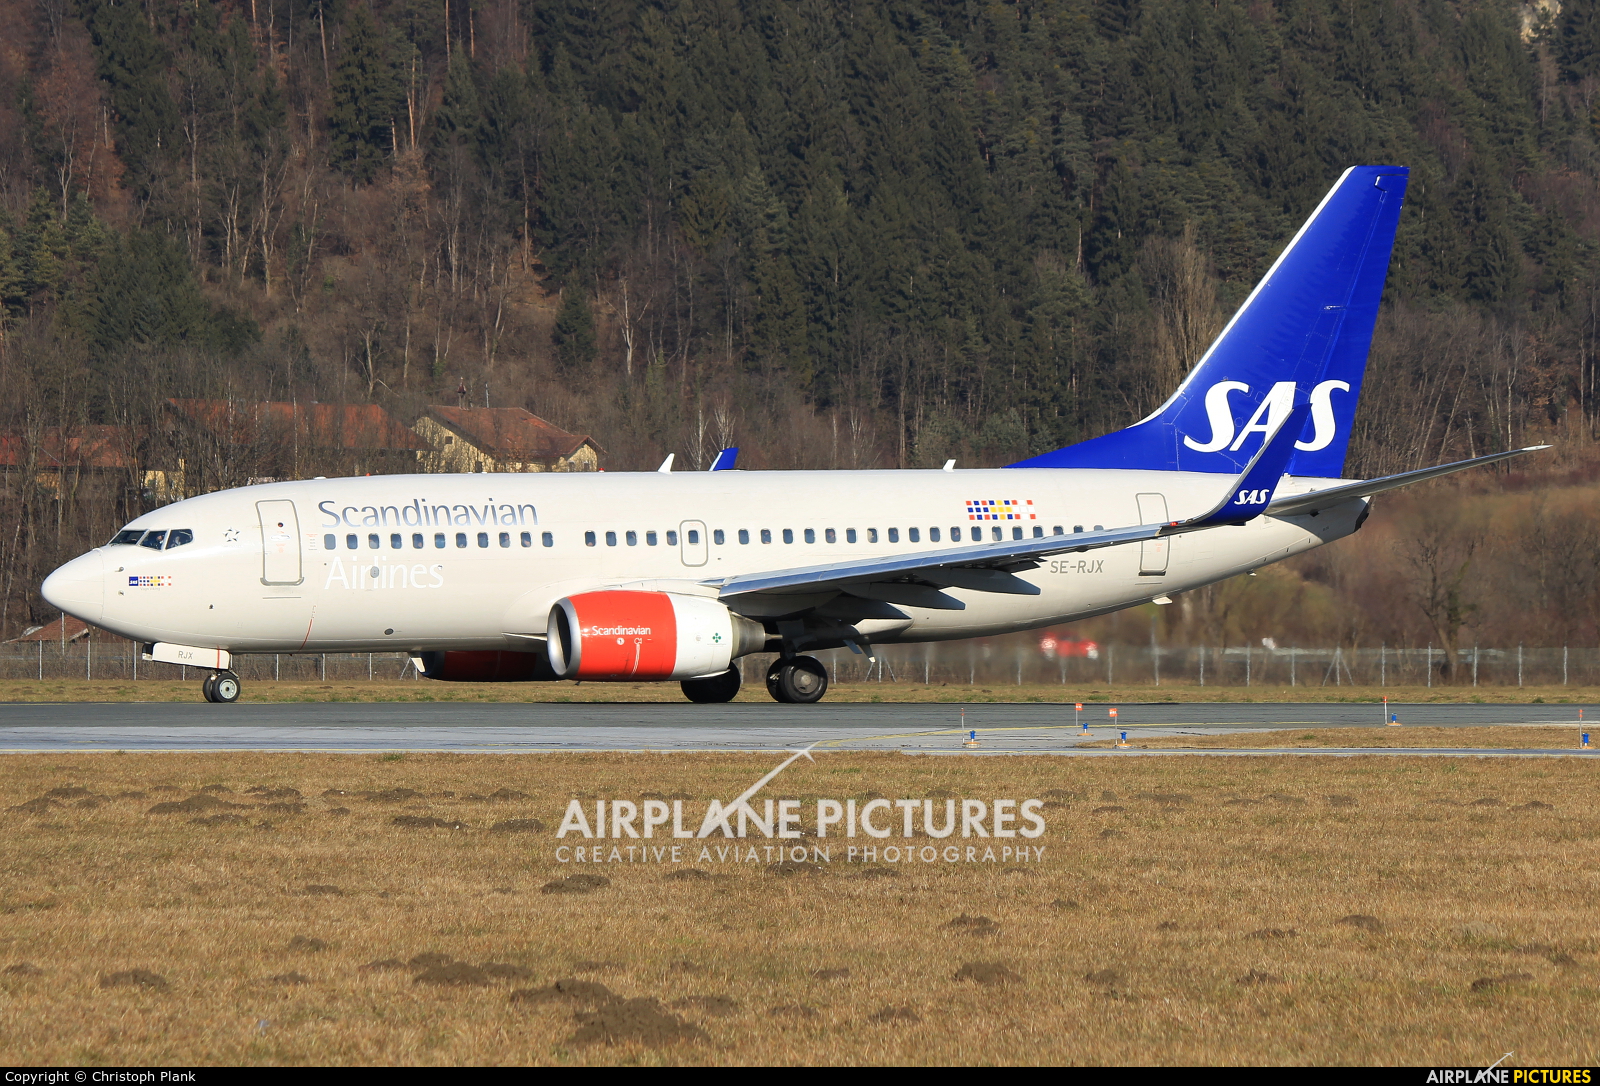 SAS - Scandinavian Airlines SE-RJX aircraft at Innsbruck